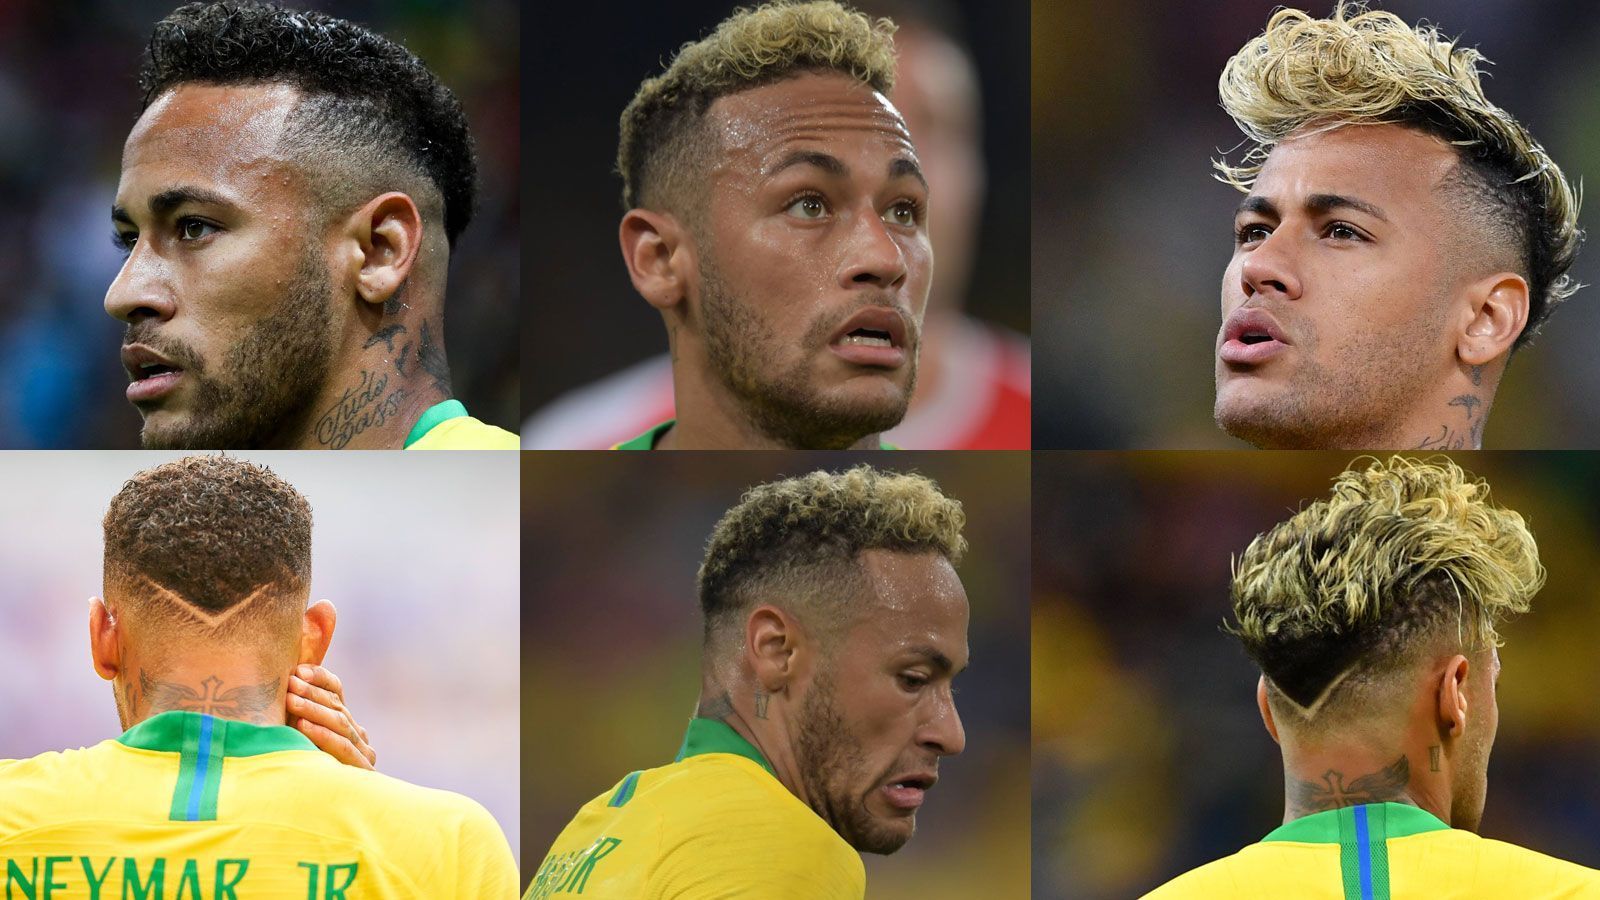 
                <strong>Neymars Frisuren</strong><br>
                Die Evolution der Neymar-Frisur im Überblick. Mit der Frisur ganz rechts startete der Brasilianer in das Turnier, die Frisur ganz links trug er beim Aus gegen Belgien. In der Mitte ist Neymars Übergangsschnitt zu sehen.
              